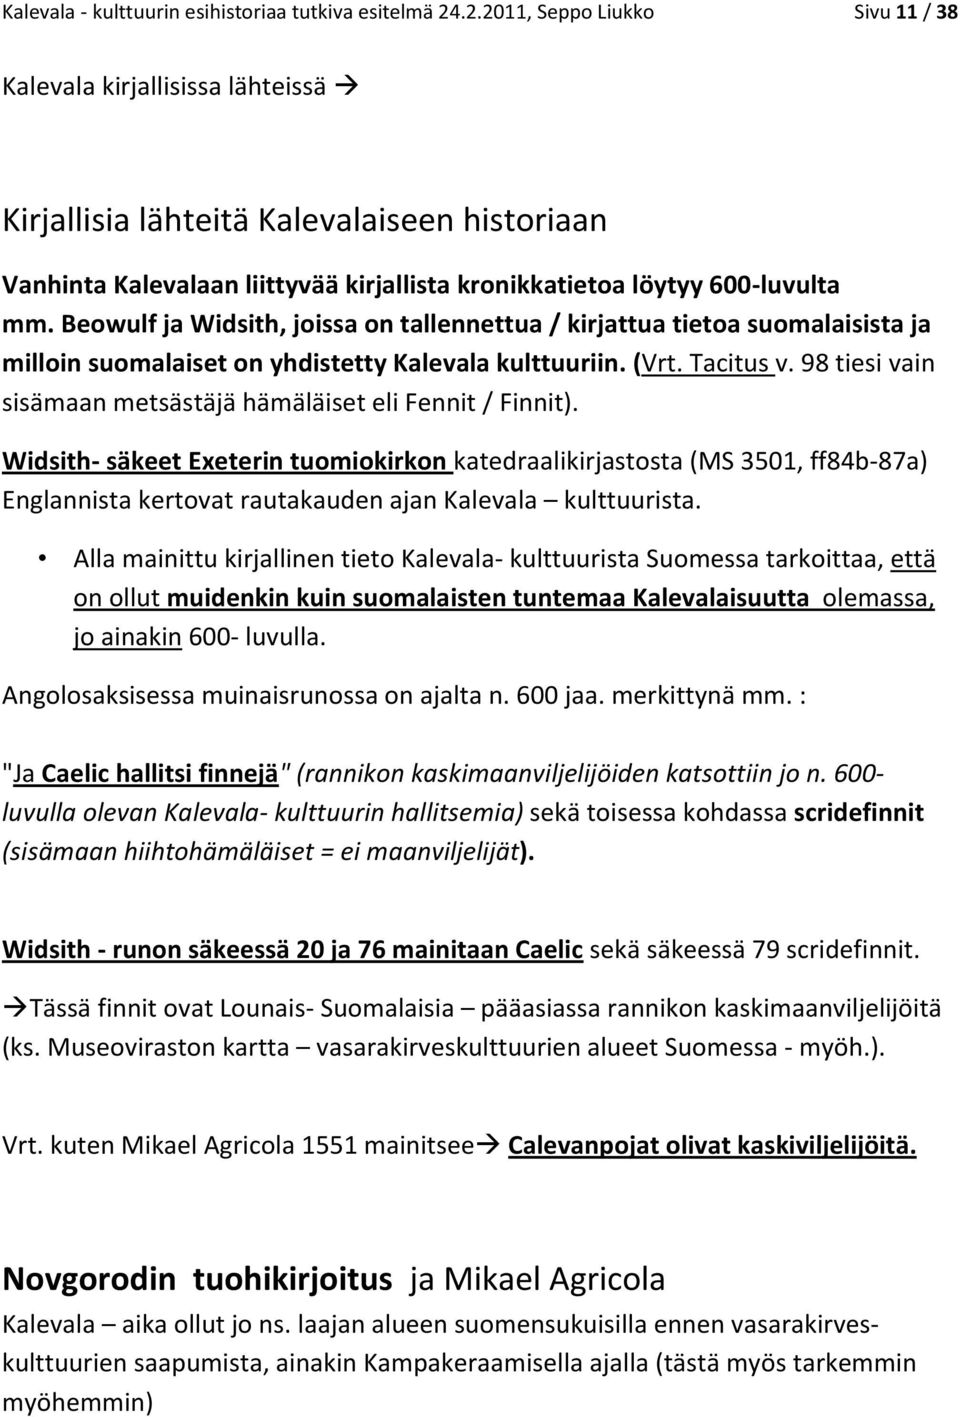 Beowulf ja Widsith, joissa on tallennettua / kirjattua tietoa suomalaisista ja milloin suomalaiset on yhdistetty Kalevala kulttuuriin. (Vrt. Tacitus v.